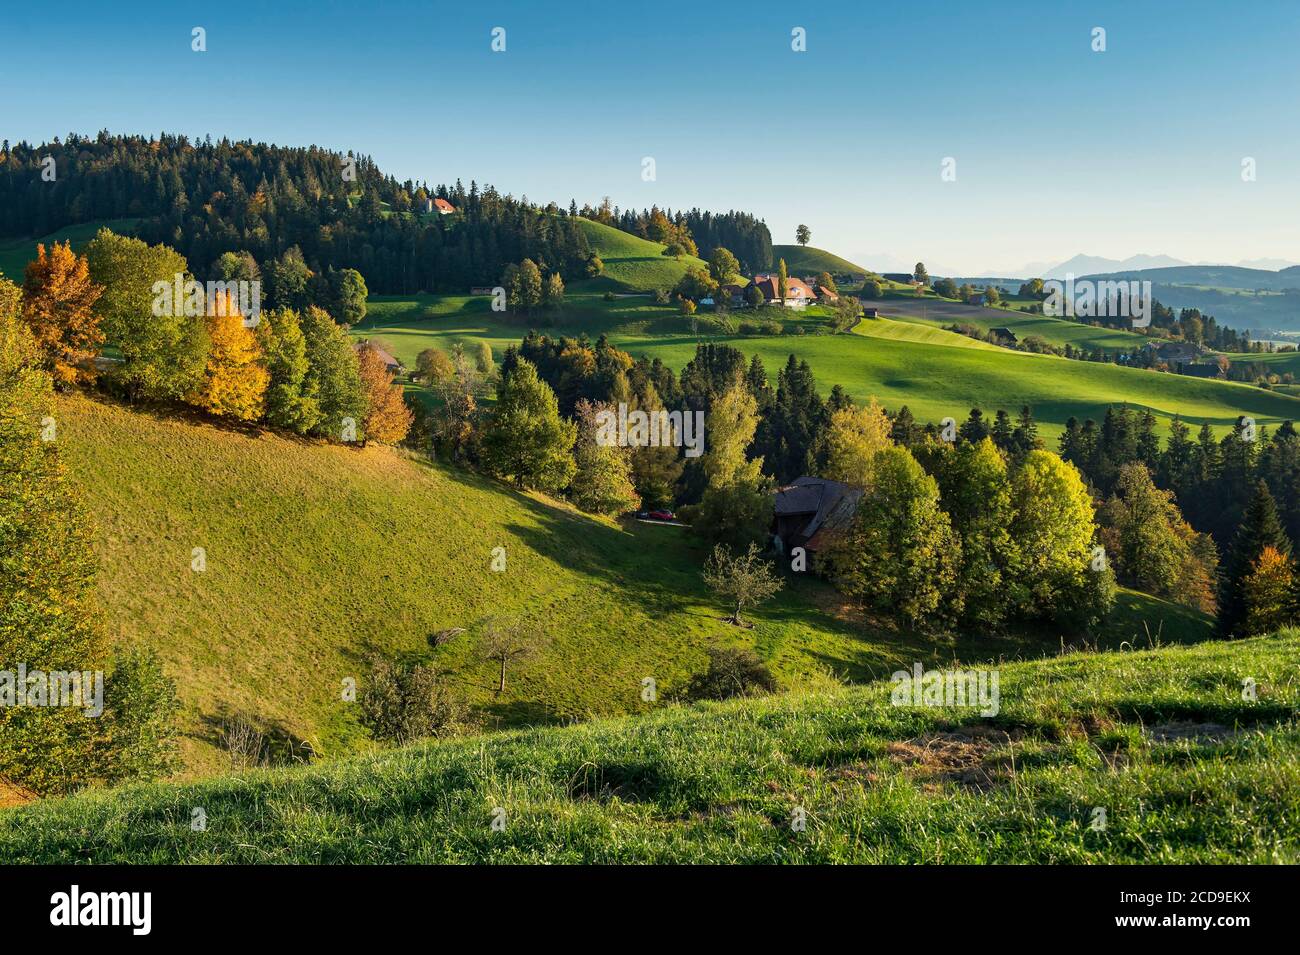 Svizzera, Cantone di Berna, Valle dell'Emme, ripido paesaggio collinare, tipico della regione dell'Emmental, punteggiato da tradizionali fattorie in legno nei pressi di Eggiwil Foto Stock